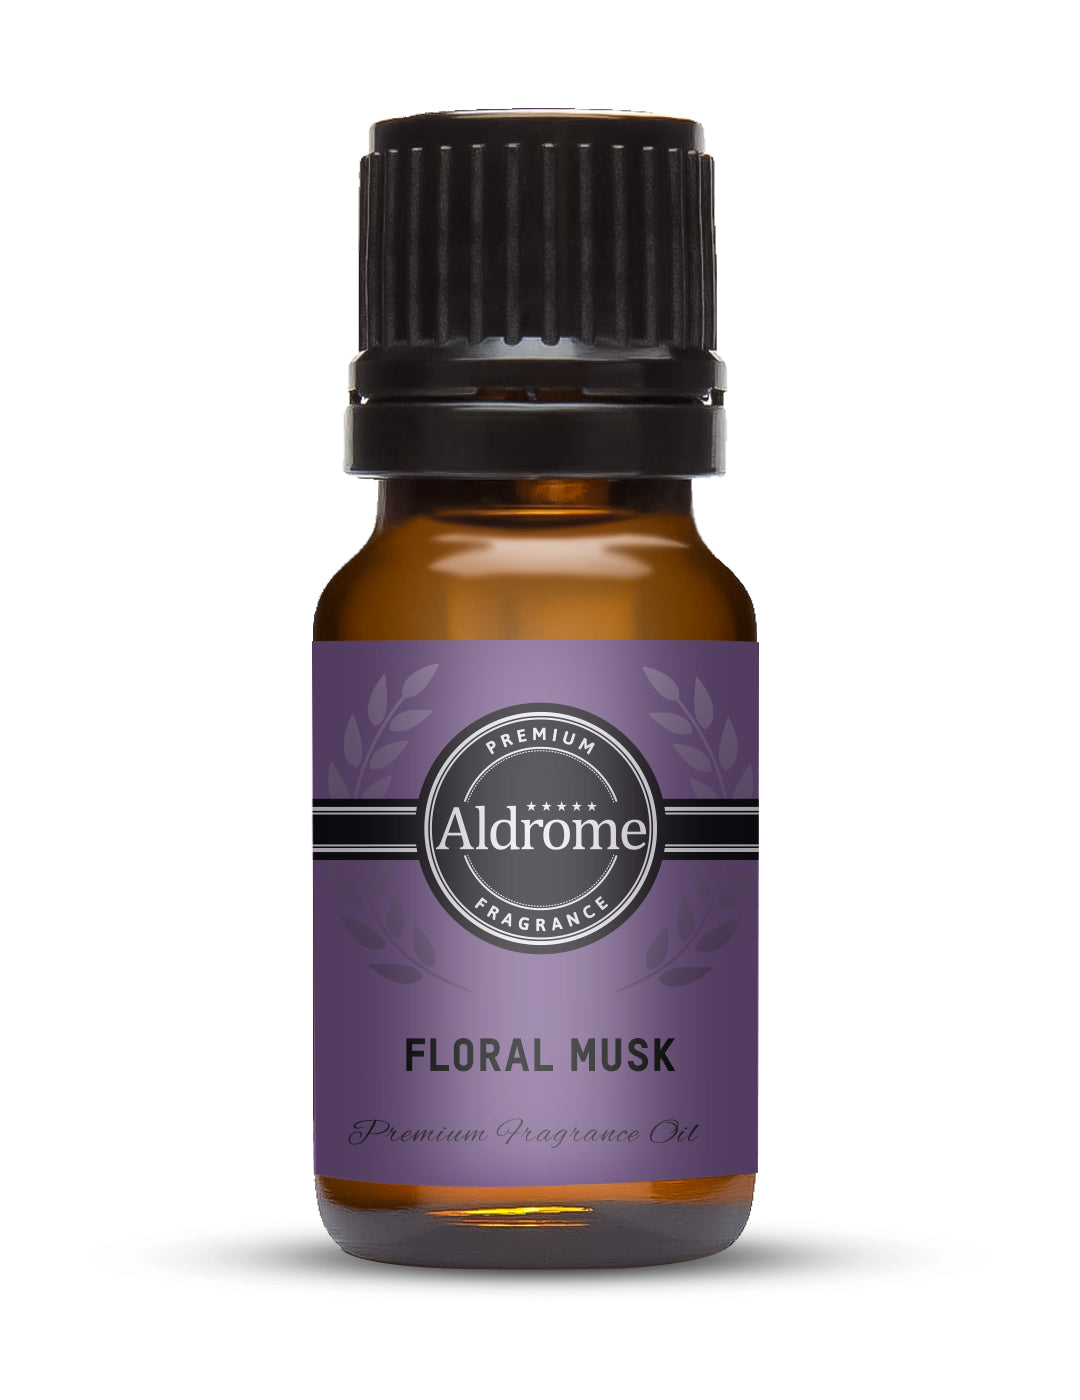 Buy Floral Musk Fragrance Oil - 10ml | Aldrome Premium Fragrance Oil